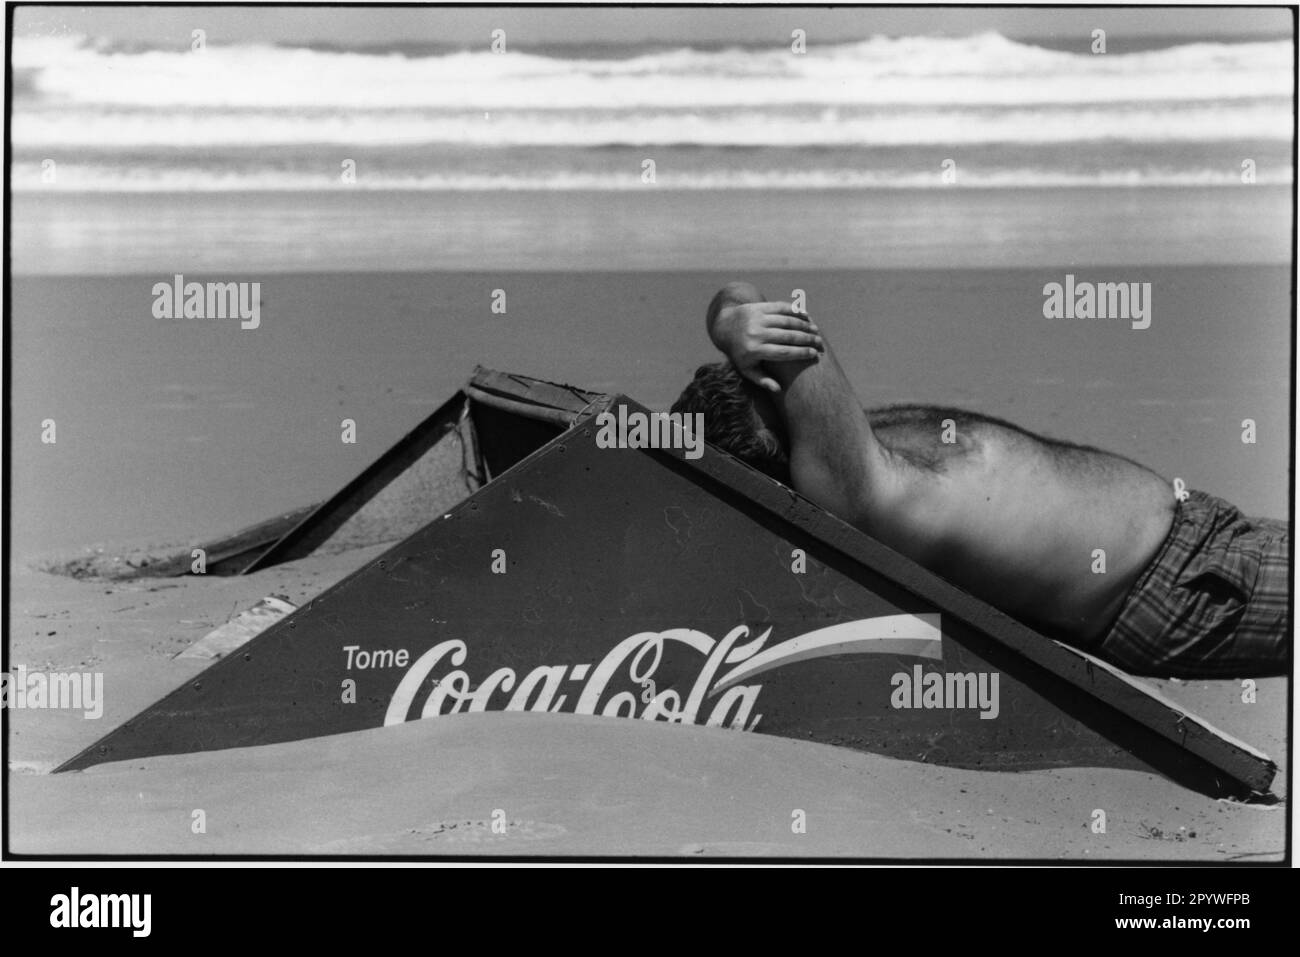 Uruguay, Punta del Este. Tomar el sol. Viaje y tiempo libre: Un hombre se inclina contra una cartelera de Coca-Cola en la playa, con las olas del Atlántico en el fondo. Escena de playa, blanco y negro. Foto, 1997. Foto de stock